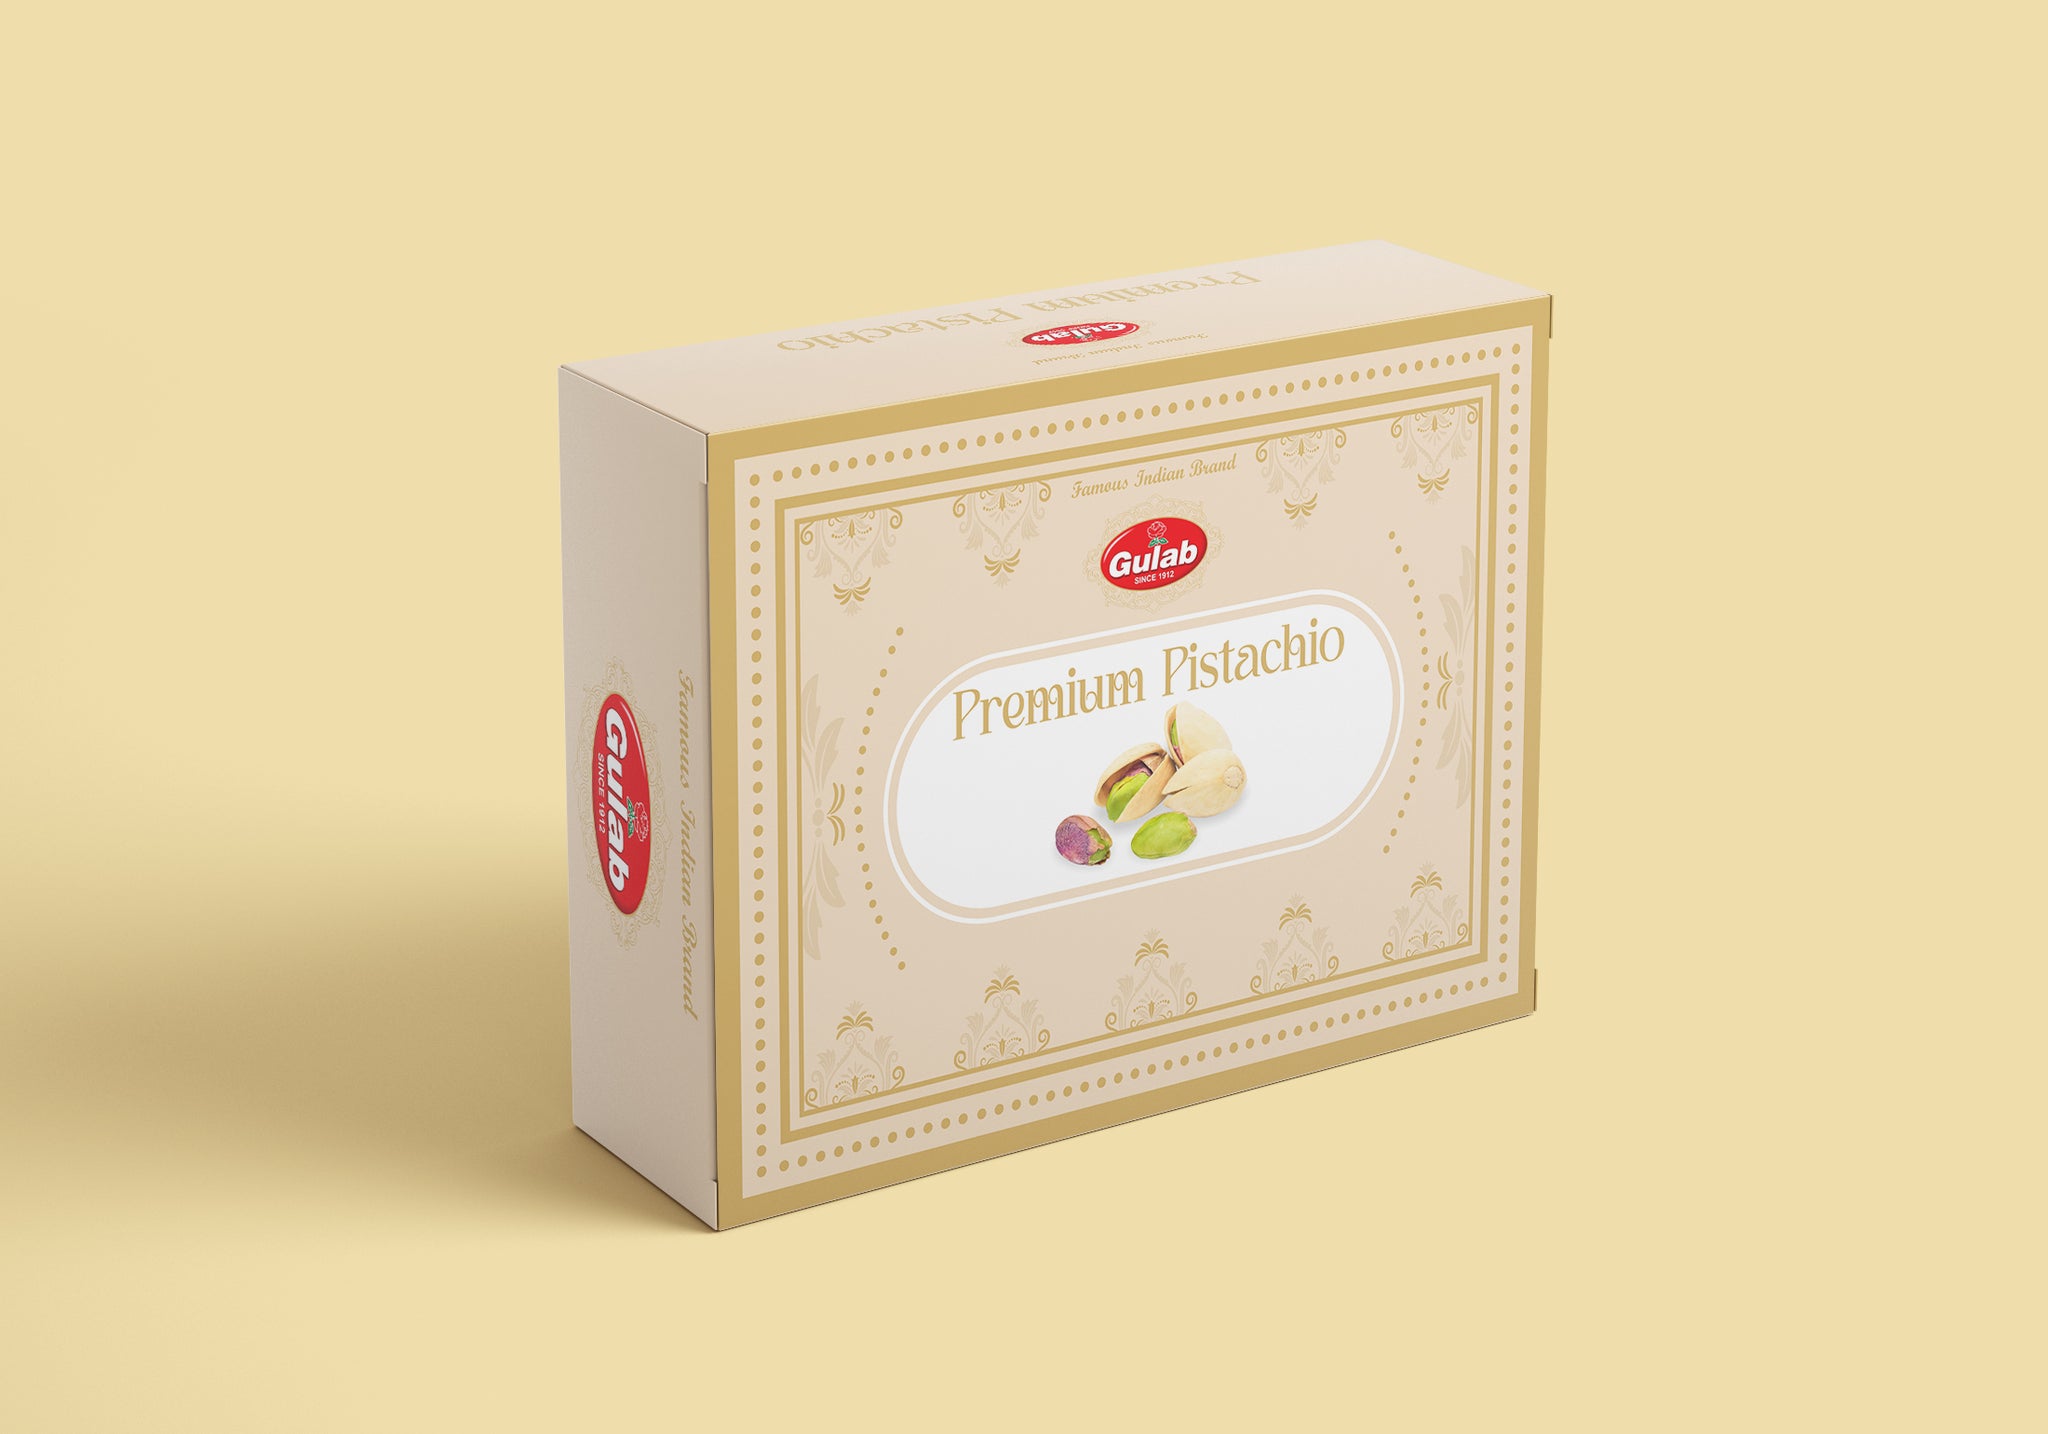 Premium Pistachio 200gm